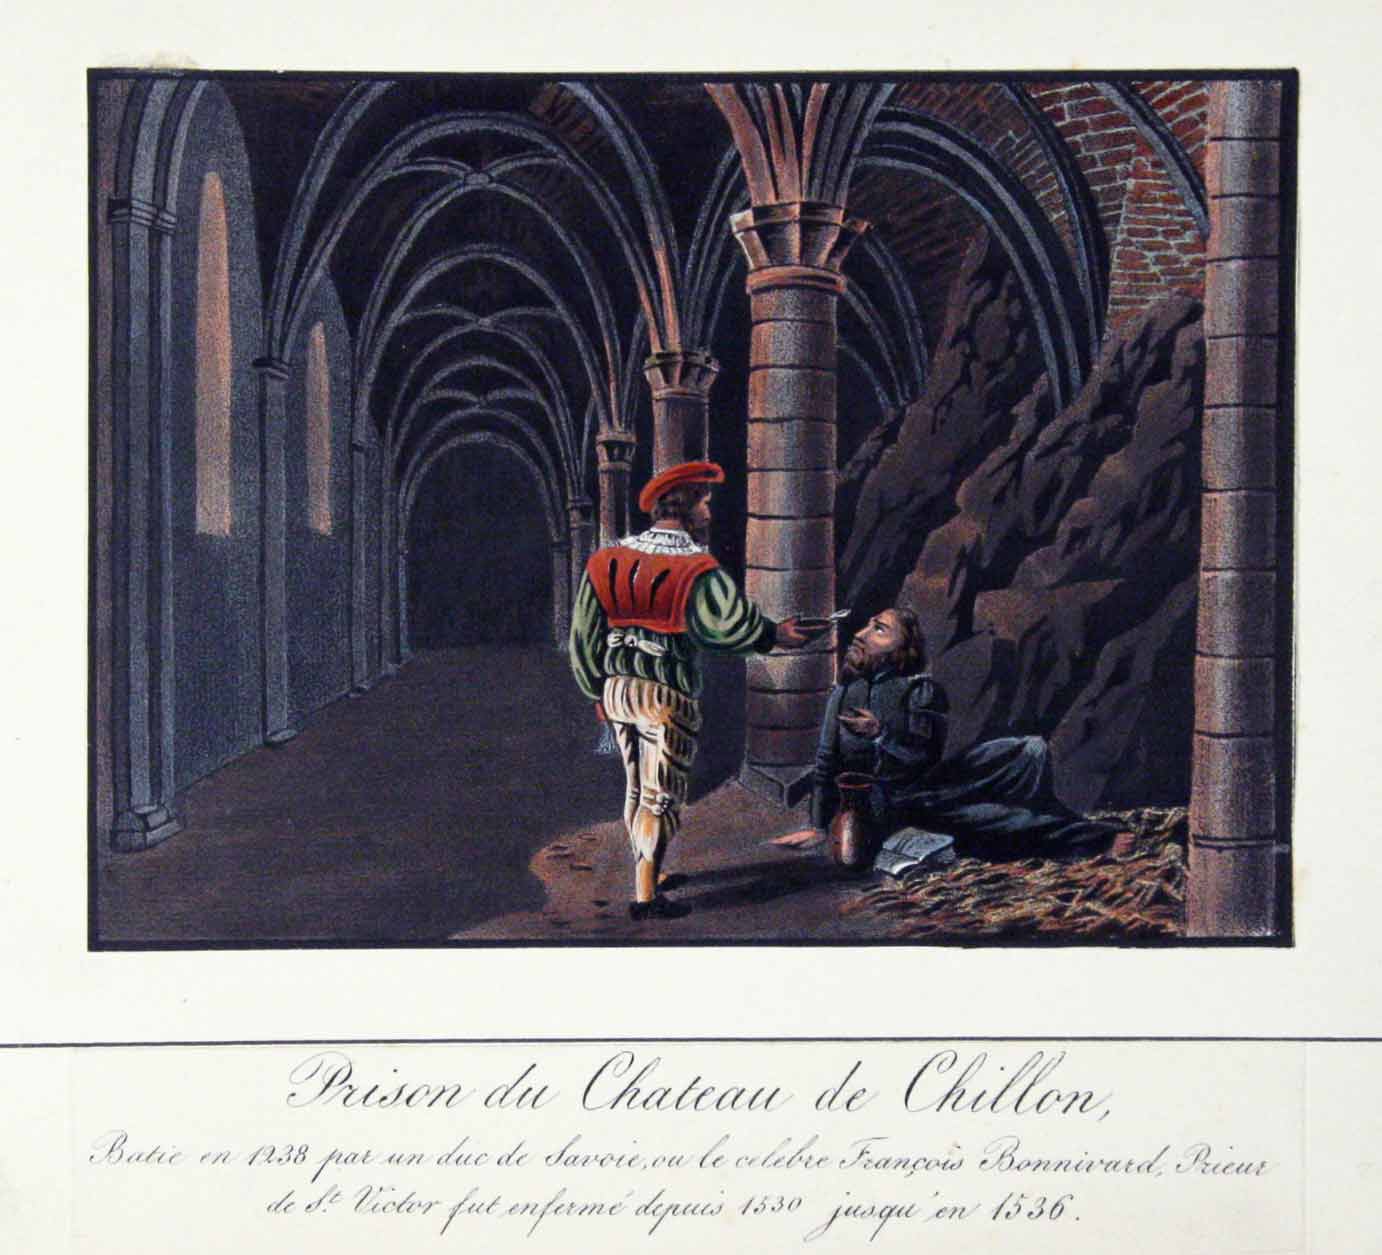  - Chillon. - (Texte ms.:) Prison du Chteau de Chillon. Btie en 1238 par un duc de Savoie, o le clebre Franois Bonnivard, Prieur de St. Victor fut enferm depuis 1530 jusqu'en 1536.